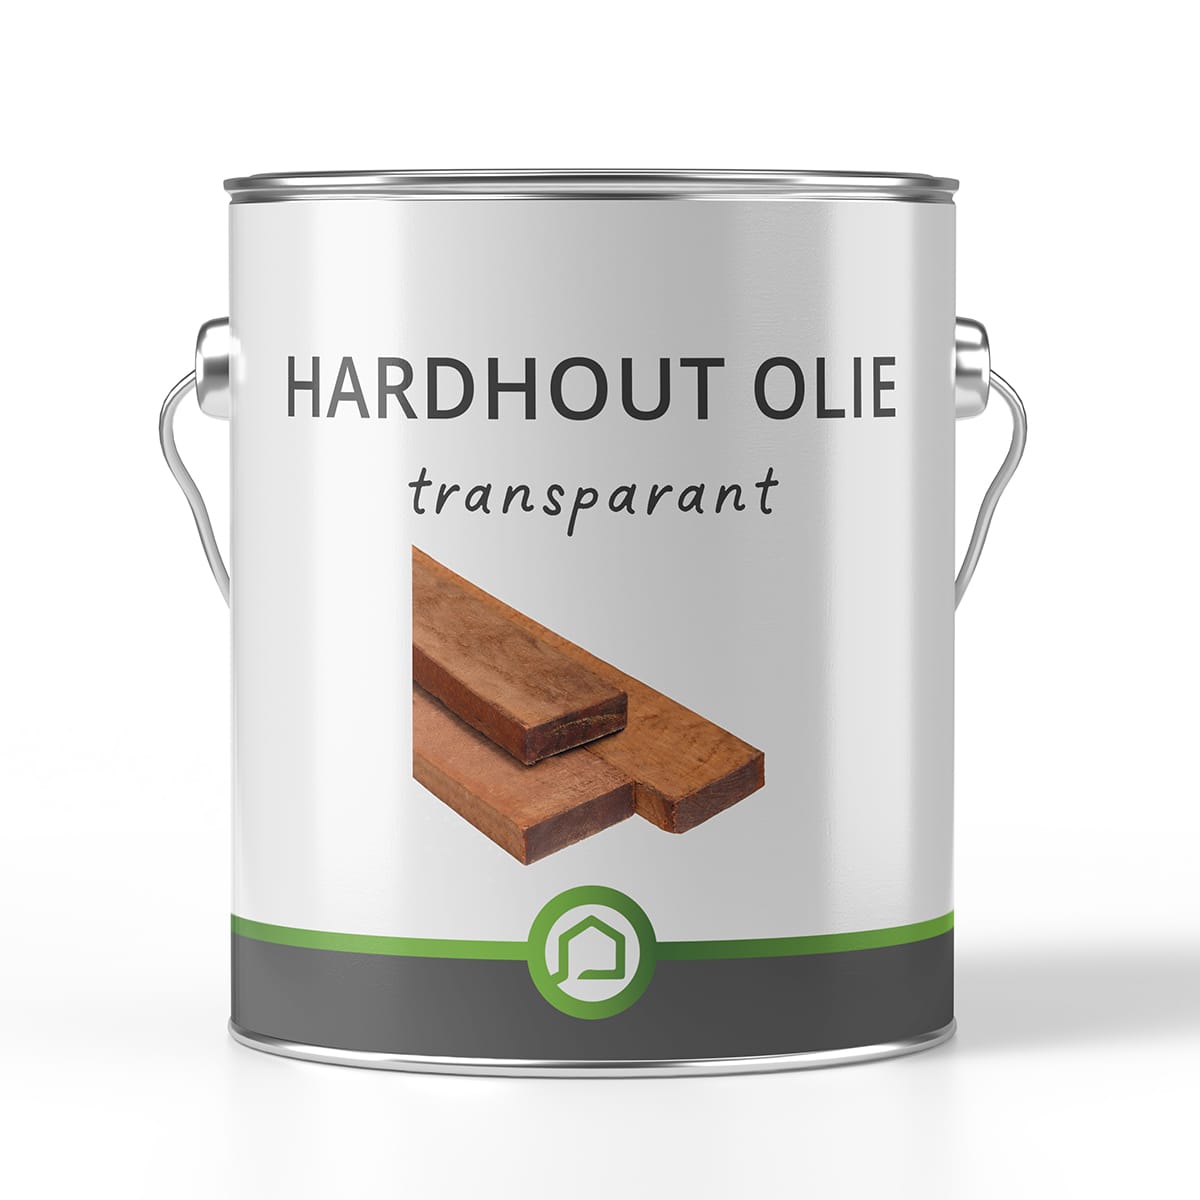 Hardhout olie